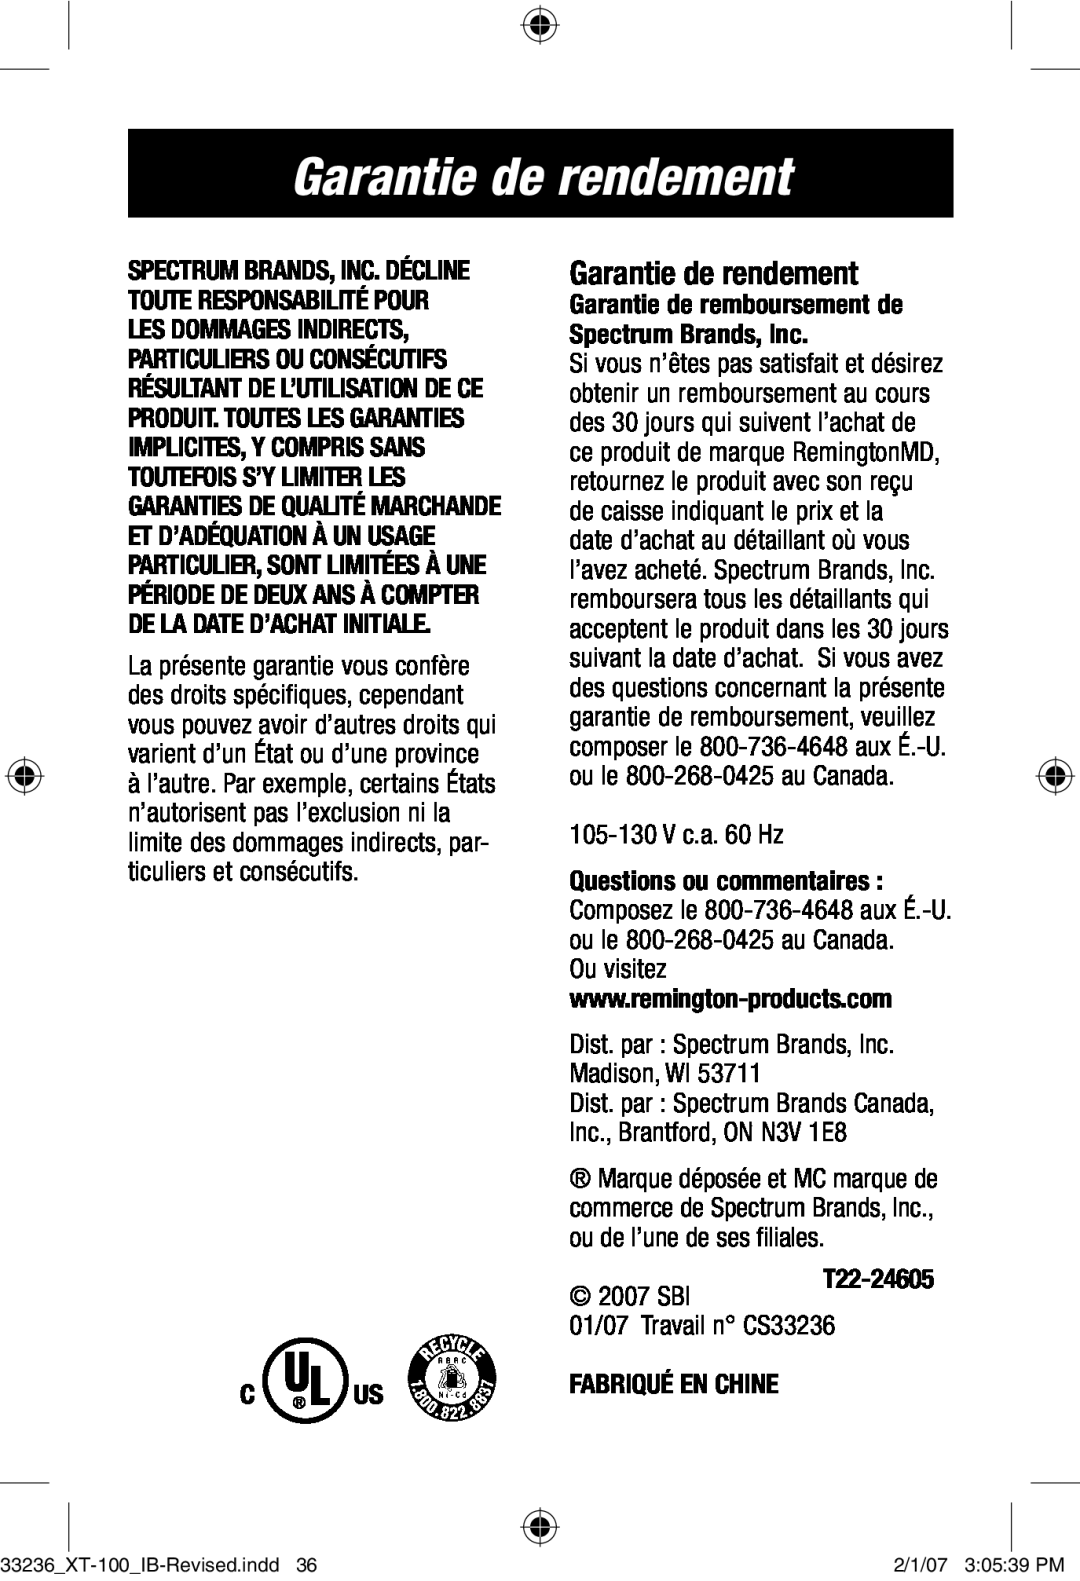 Remington Remington Code, XT-100 Garantie de rendement, 105-130 V c.a. 60 Hz, Dist. par Spectrum Brands, Inc. Madison, WI 